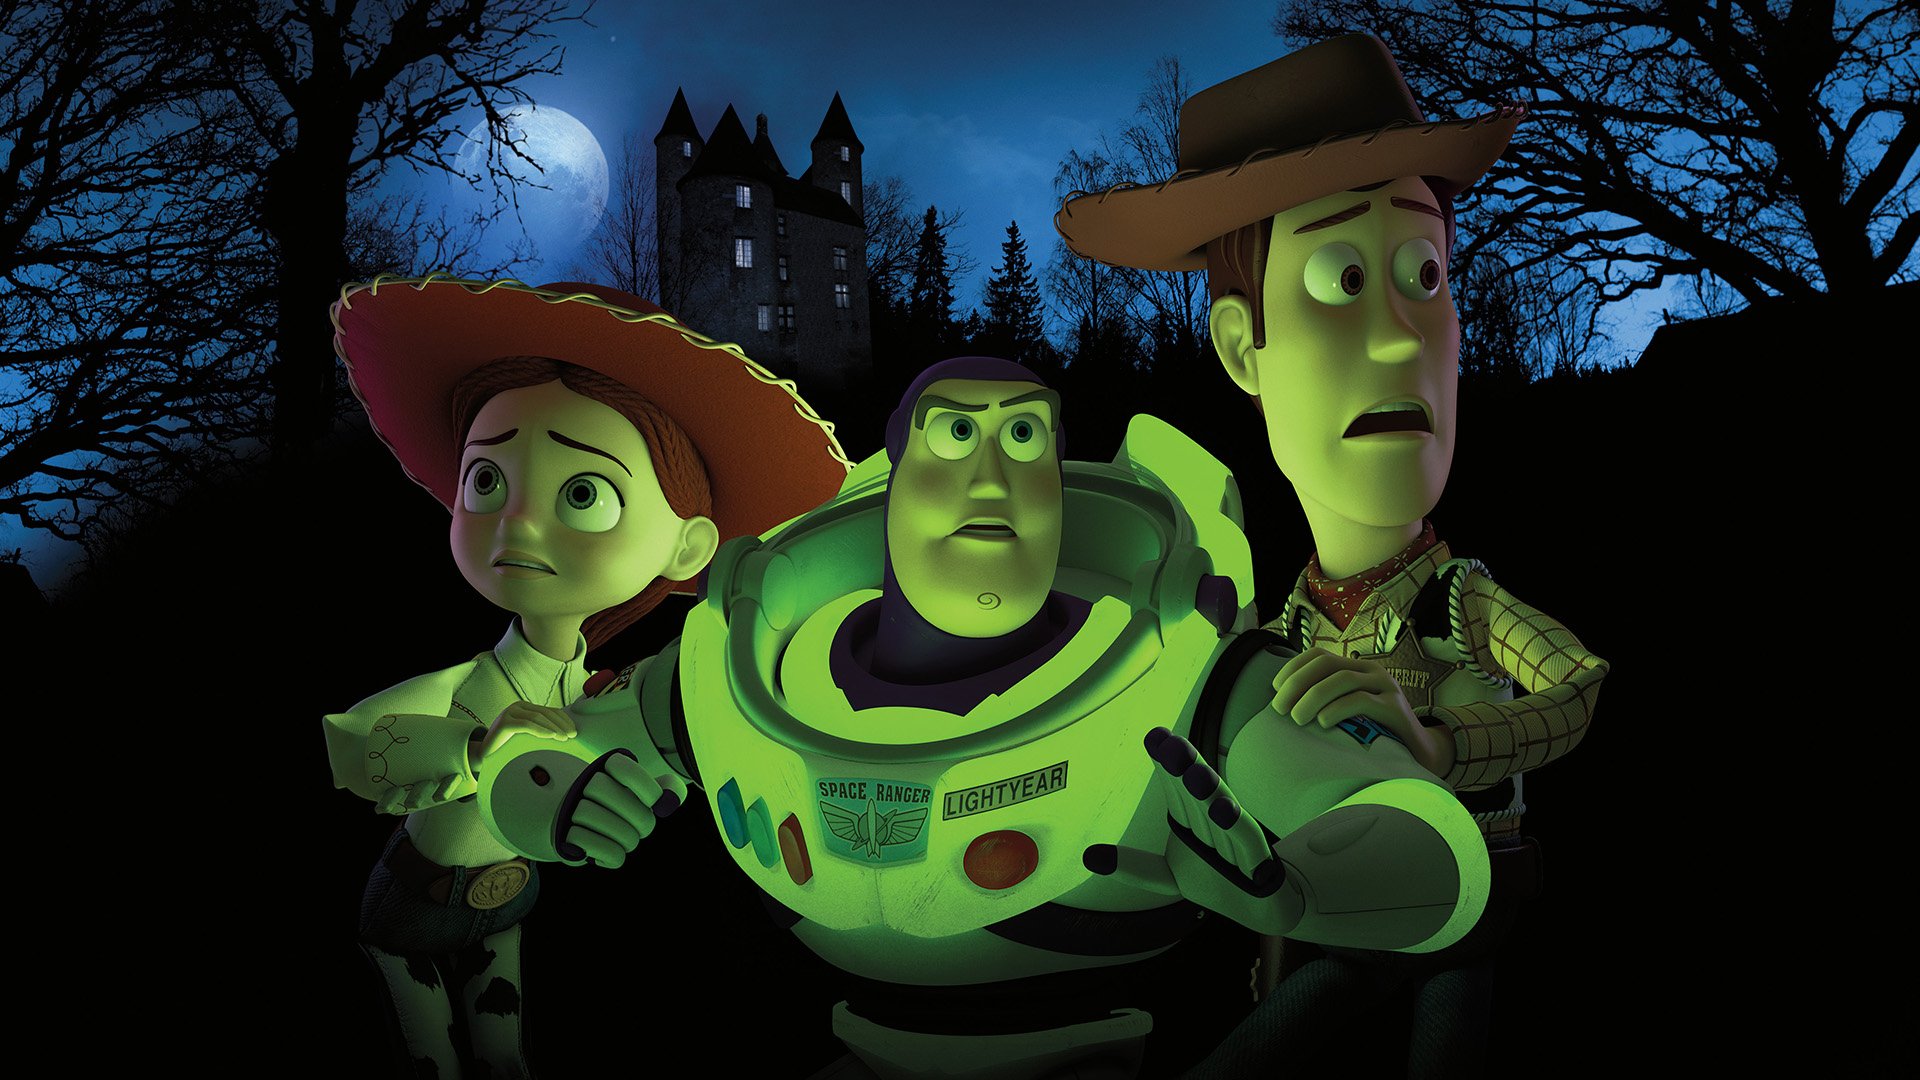 Disney+: filmes e séries para assistir no Halloween com a família - TecMundo